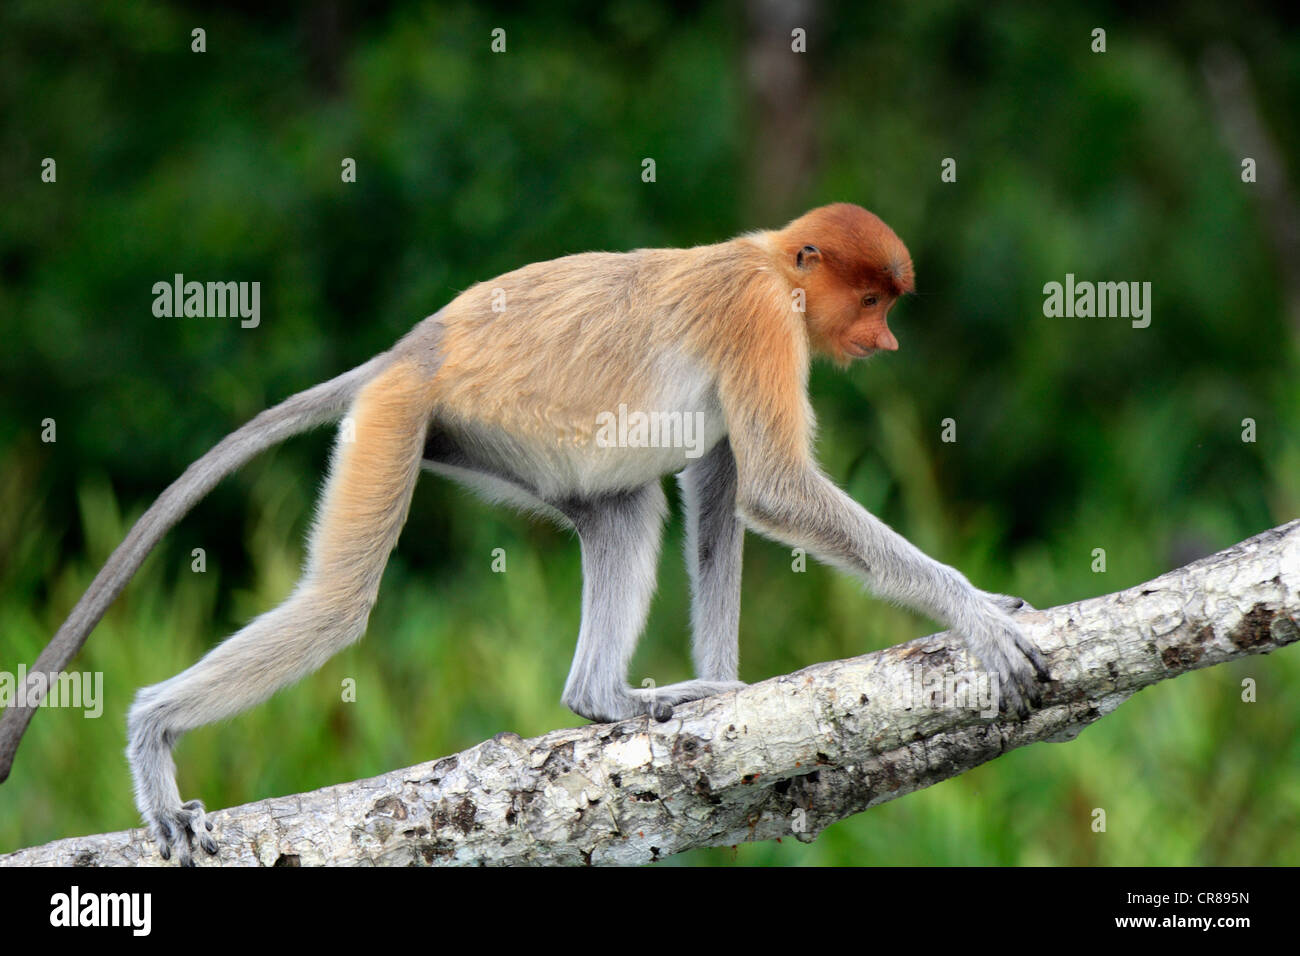 Proboscis Monkey or Long-nosed monkey (Nasalis larvatus), male, on tree, Labuk Bay, Sabah, Borneo, Malaysia, Asia Stock Photo